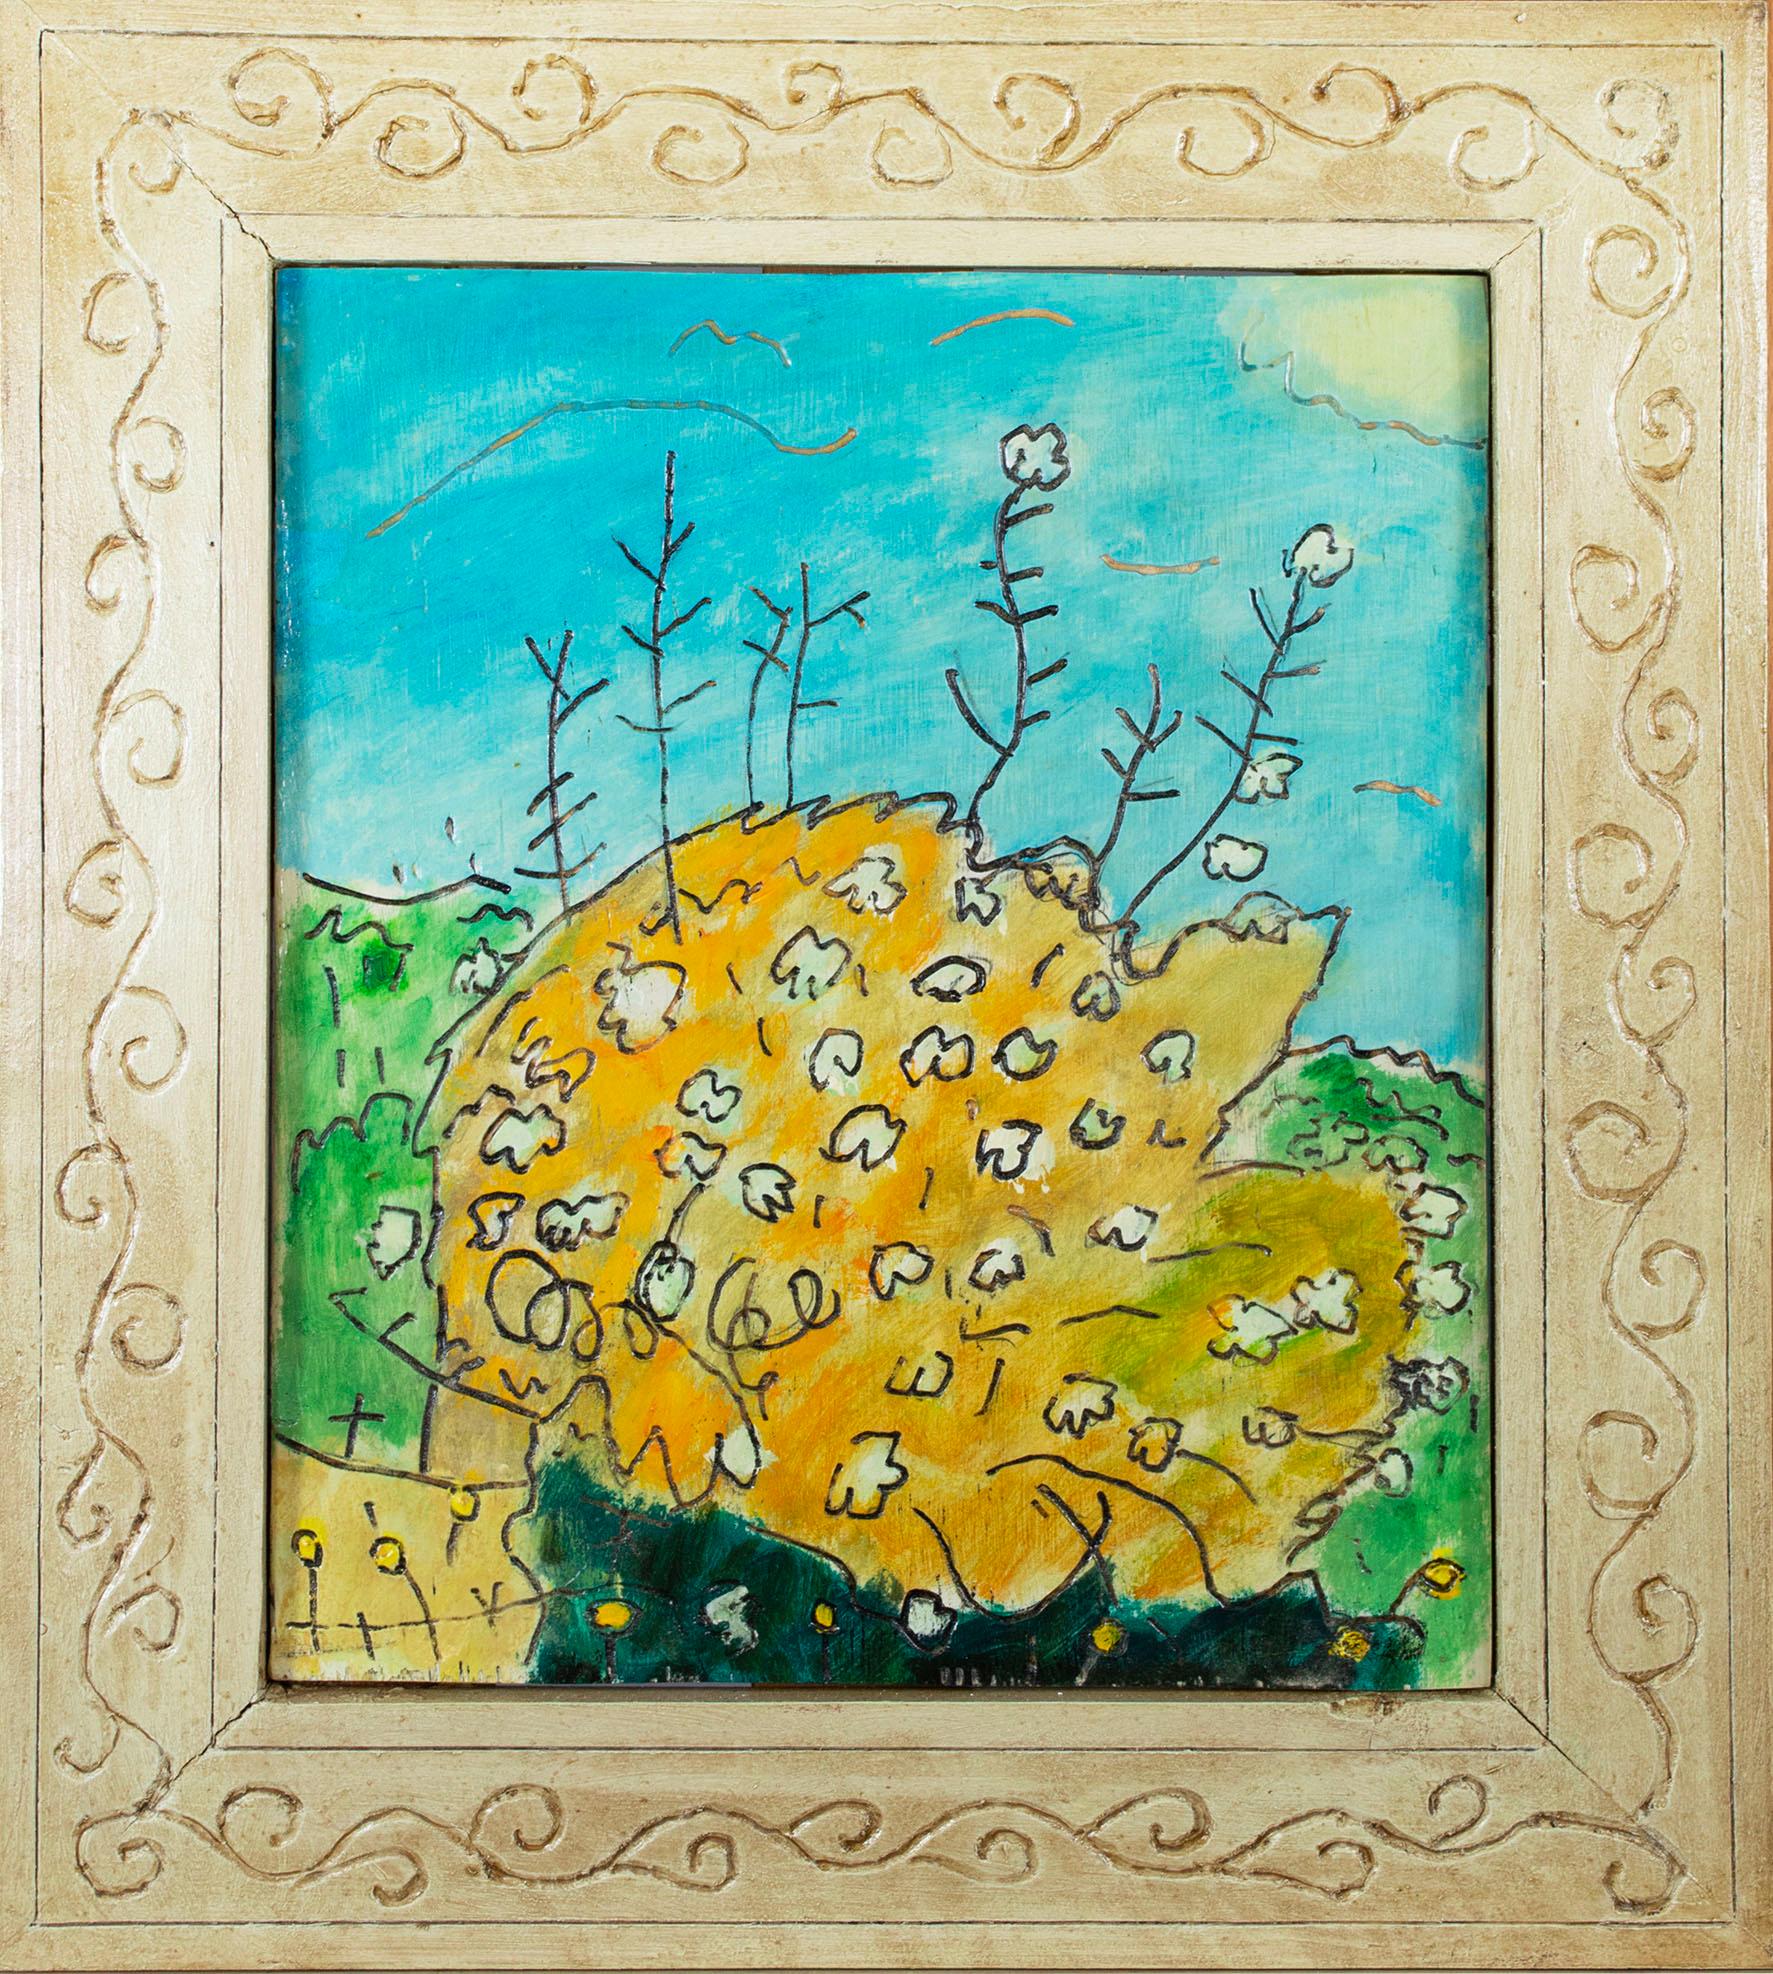 Dans cette peinture, Robert Richter a composé l'image très serrée d'un buisson feuillu, en prêtant attention à ses brins et fleurs individuels. Sous l'arbuste, une rangée de petites fleurs - peut-être des pissenlits - parsème le premier plan comme